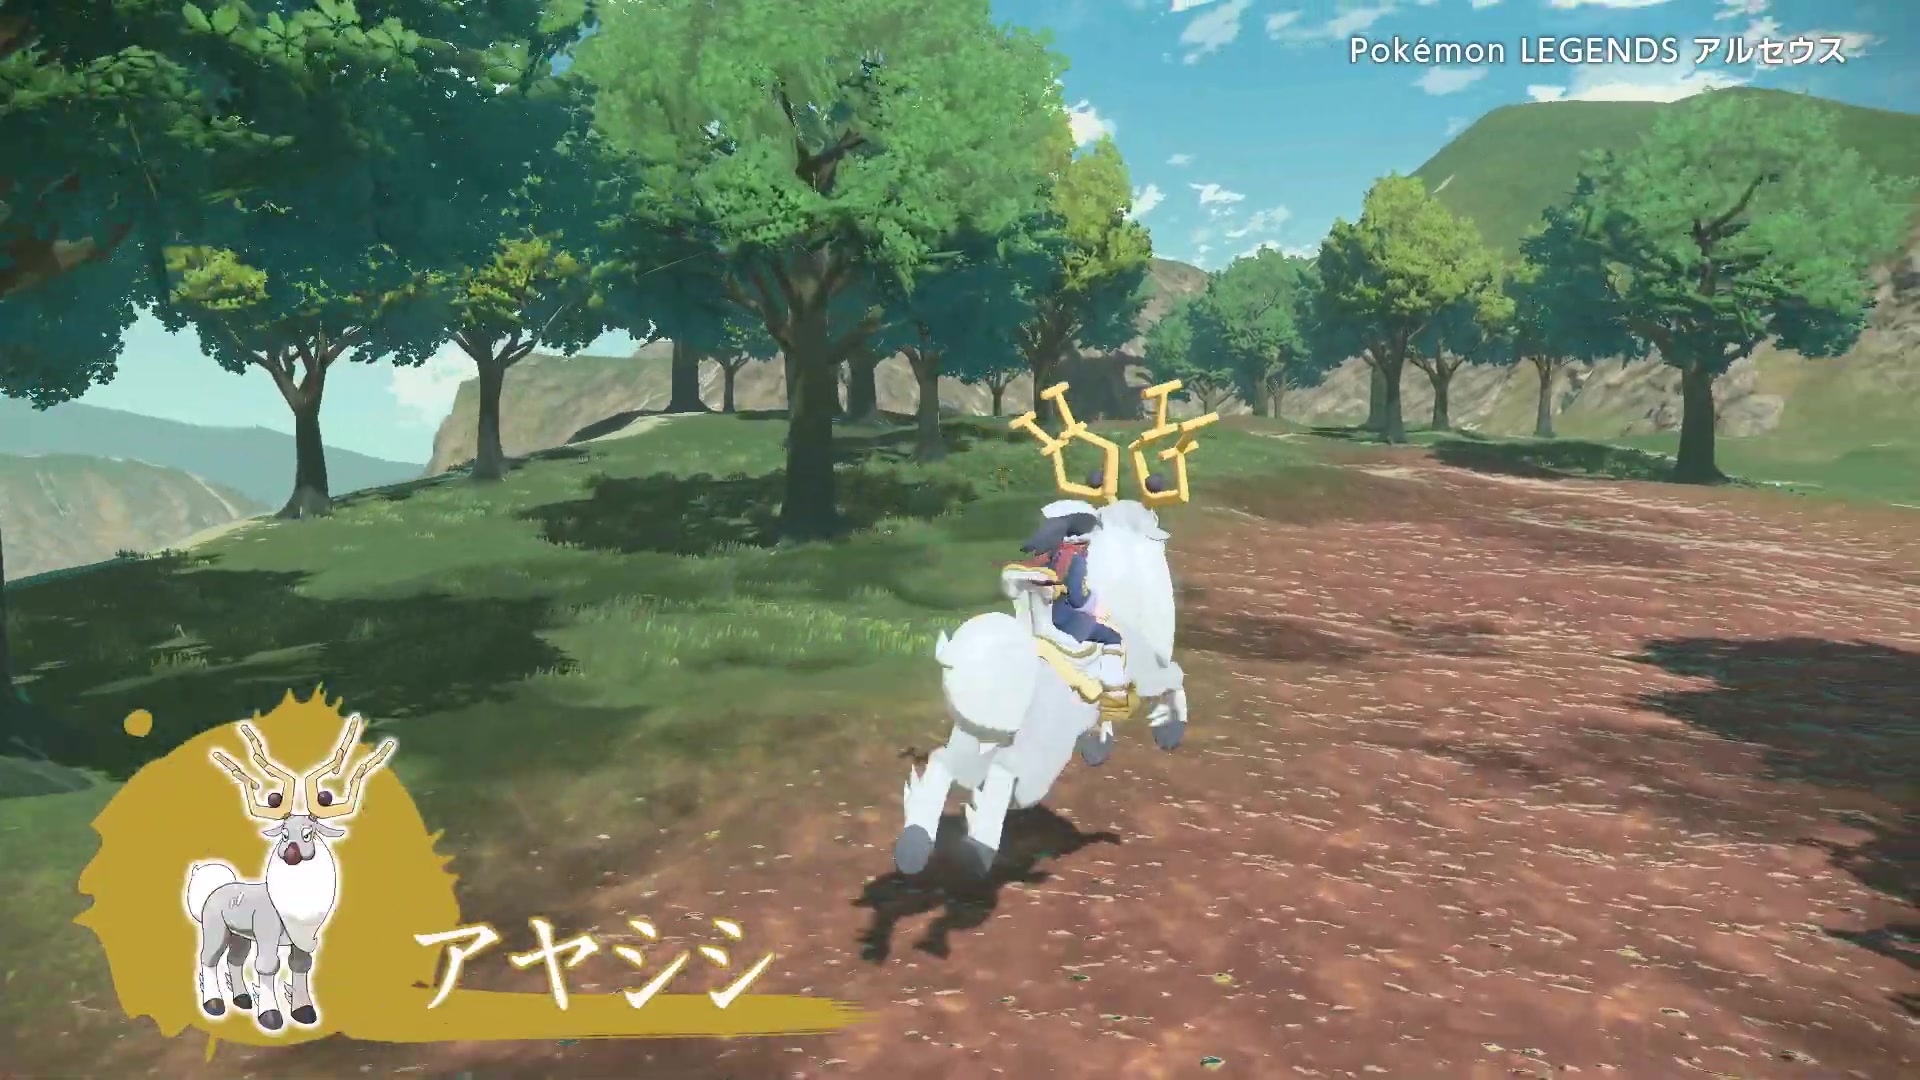 Leyendas Pokémon: Arceus (Fuji TV) Wyrdeer